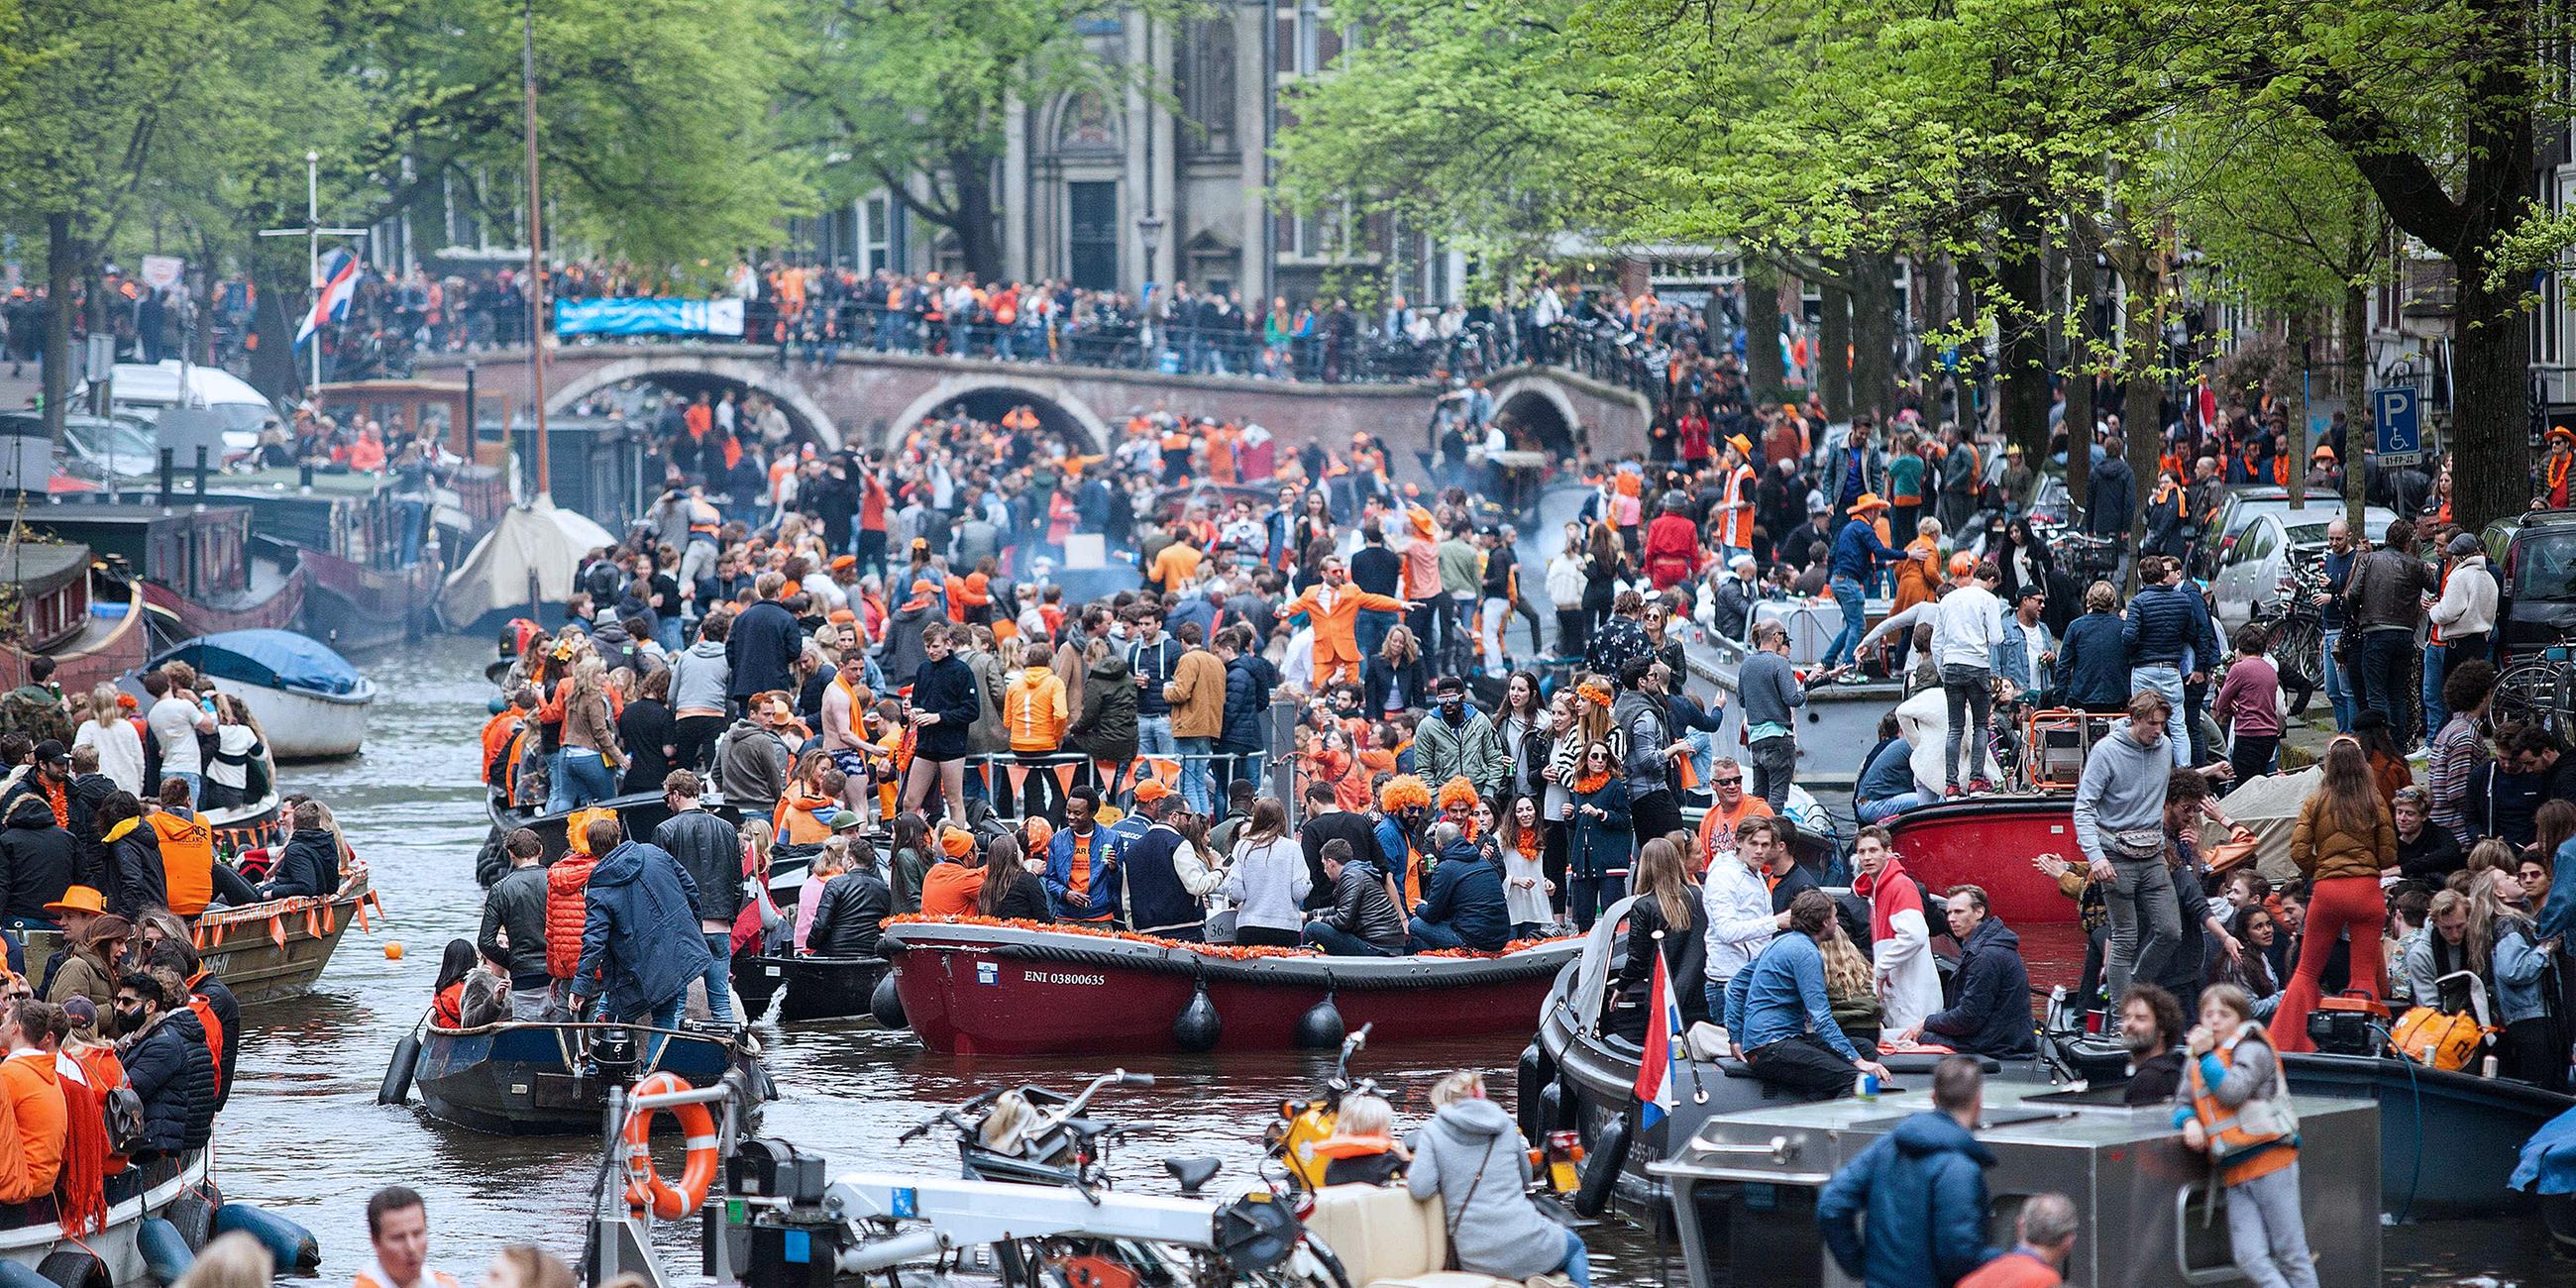 Archiv: Boote in Amsterdam zur Feier des Königstages 2018, aufgenommen am 27.04.2018